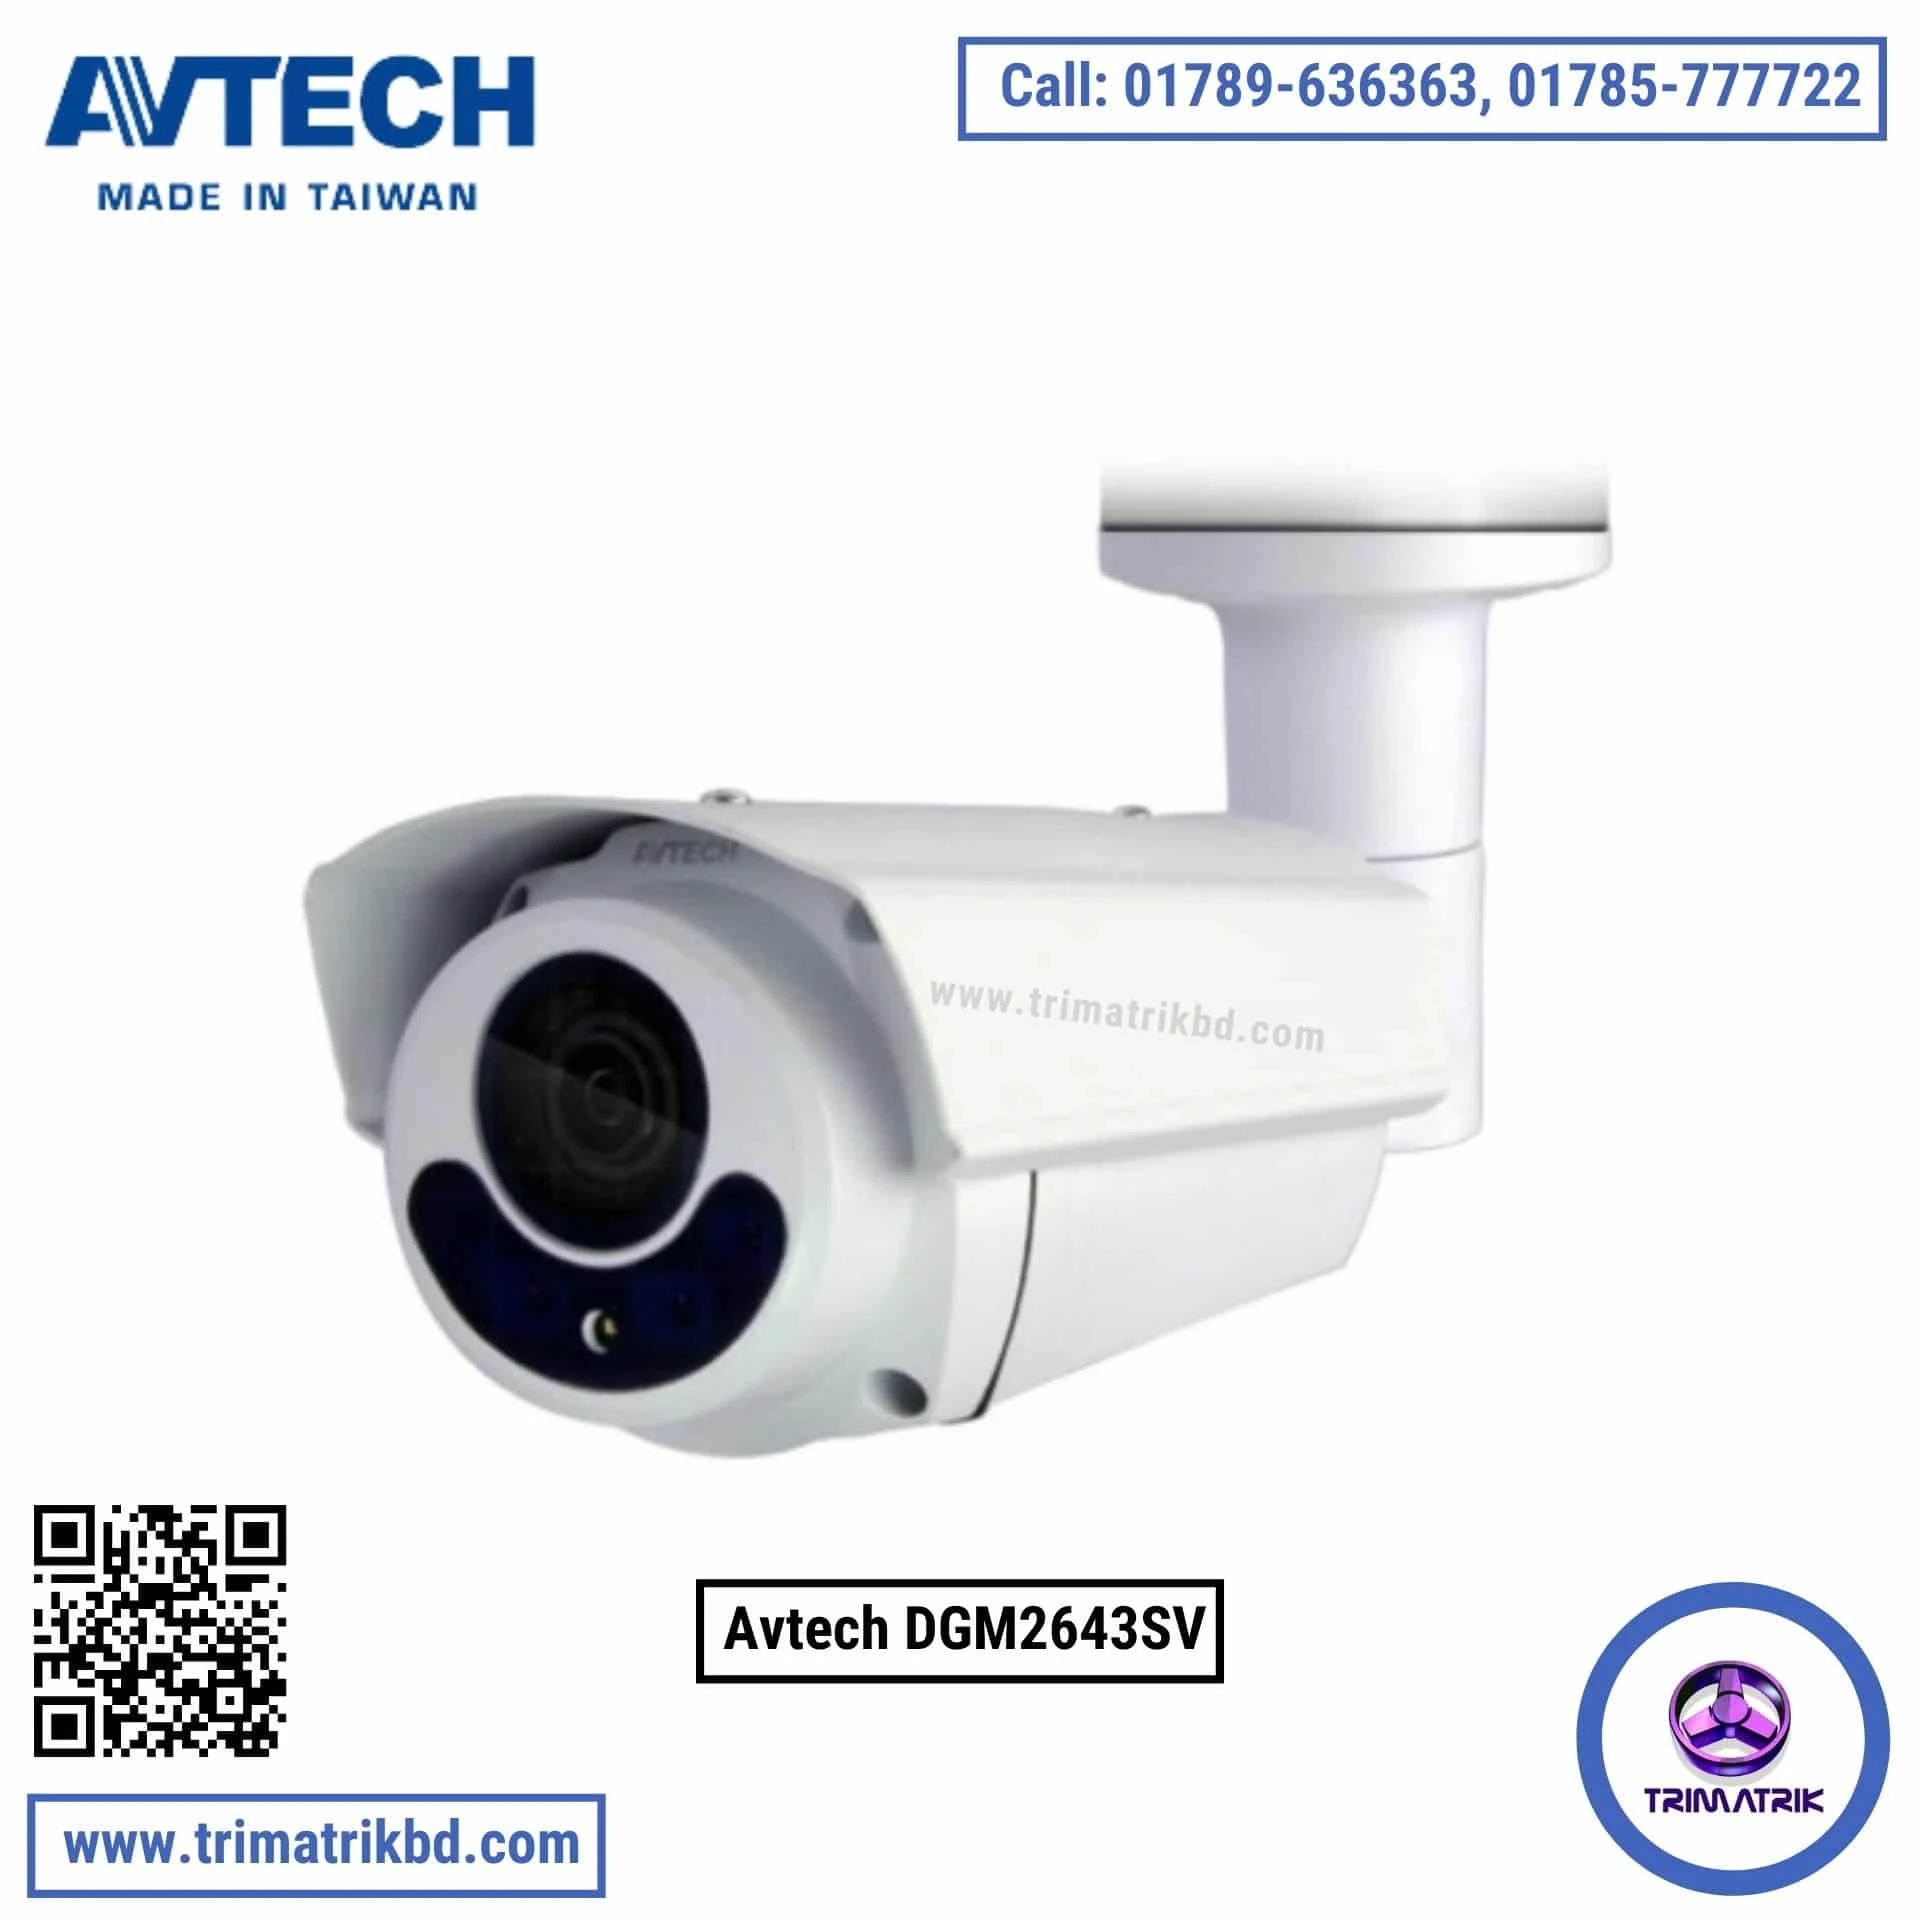 Avtech DGM2643SV 2MP H.265 IR Bullet IP Camera (Starlight / Motorized Lens)